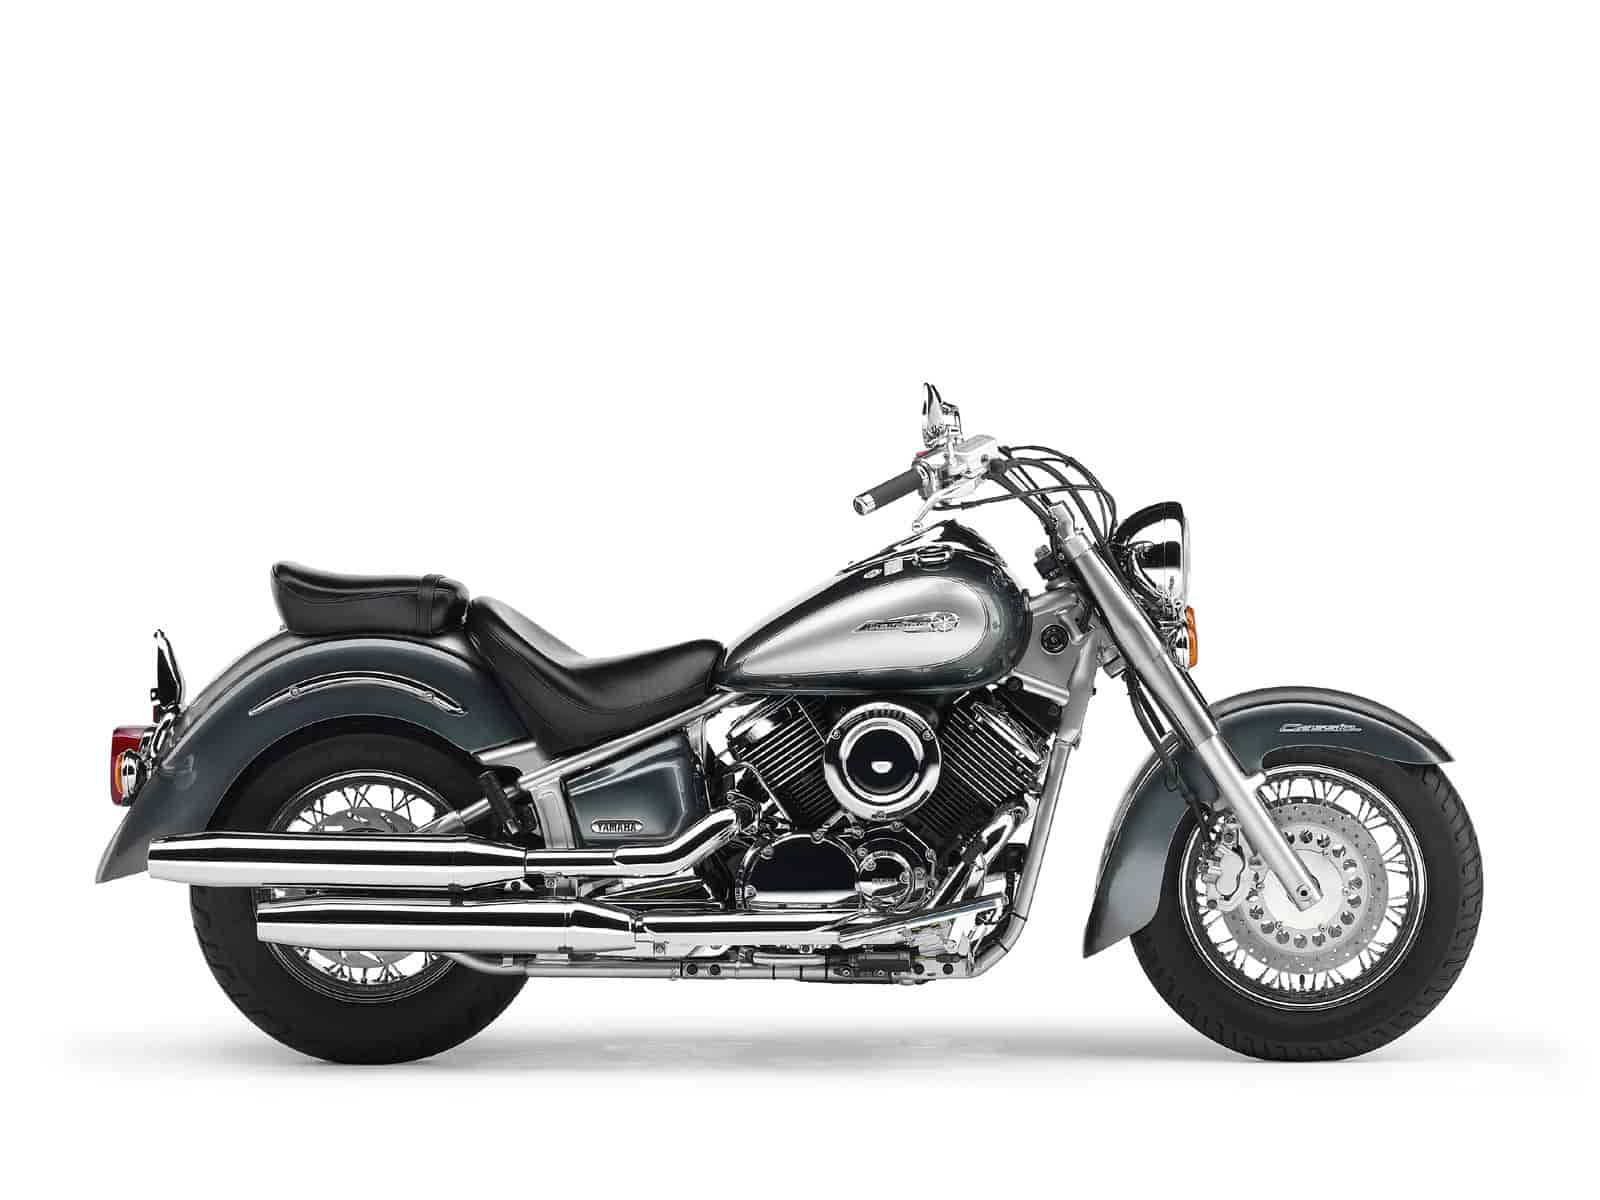 Обзор мотоцикла Yamaha Drag Star XVS 400